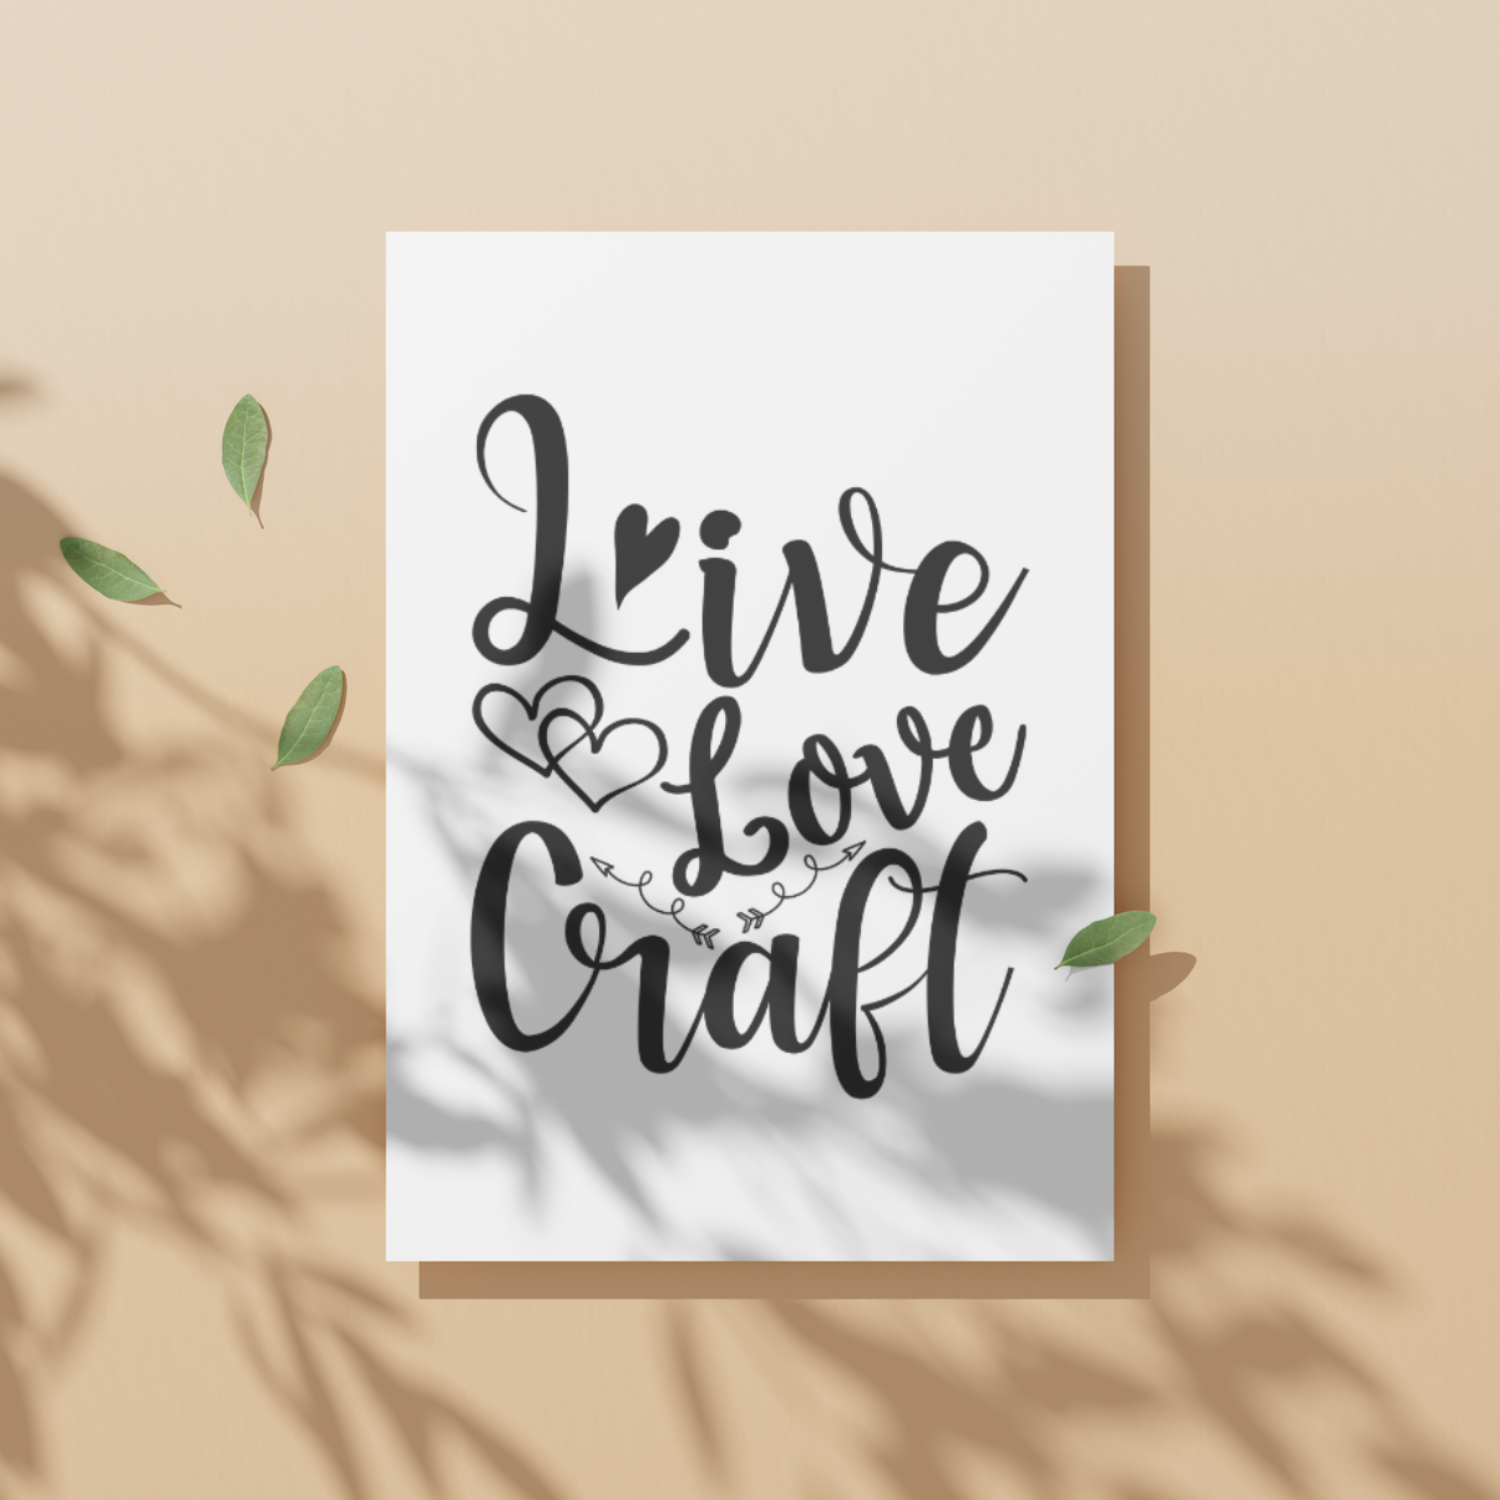 LIVE LOVE CRAFT 2 SVG | Digital Download | Cut File | SVG